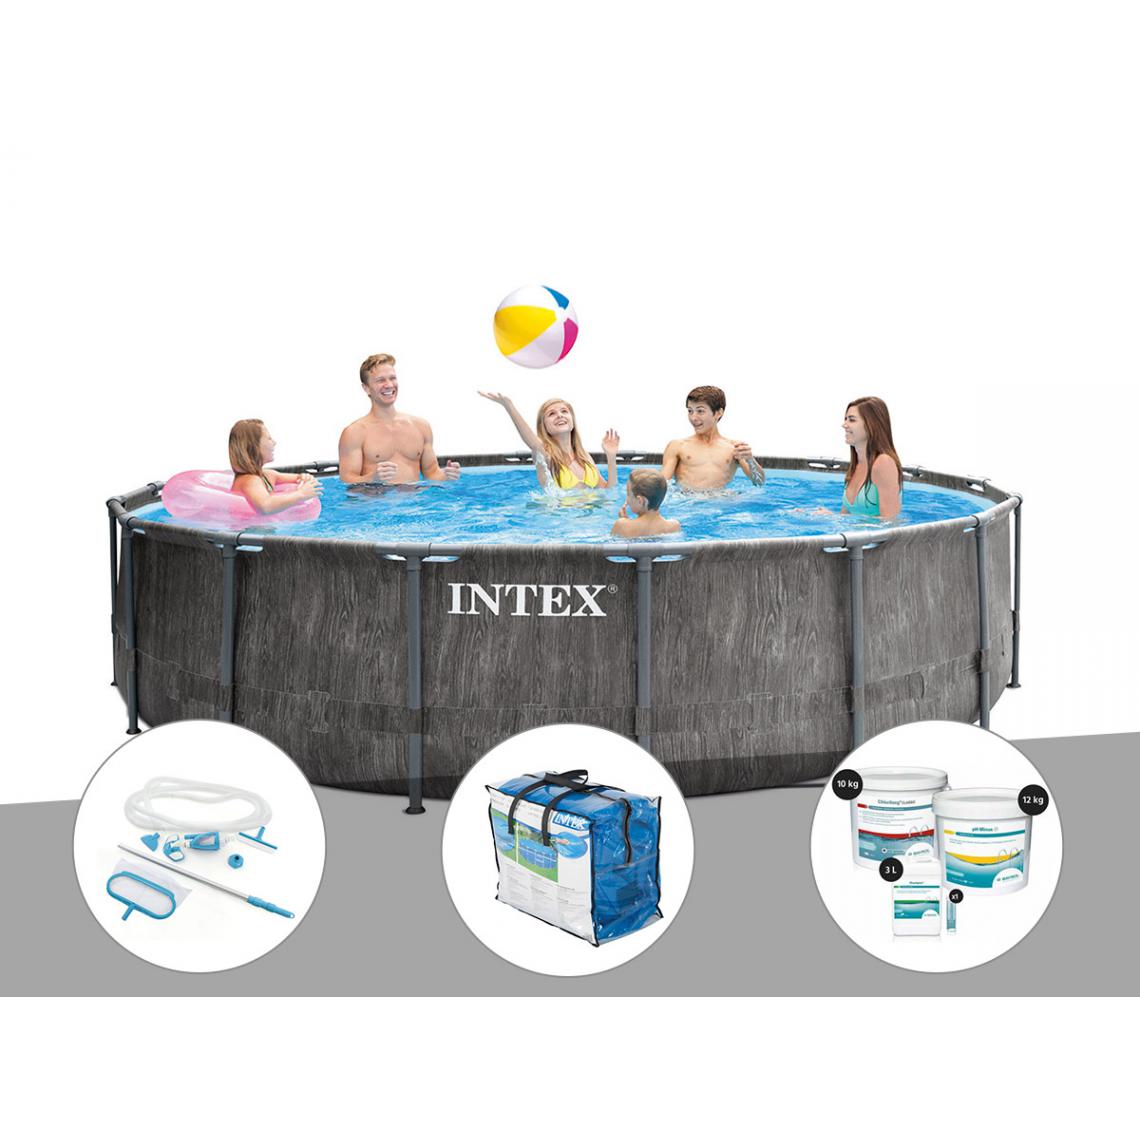 Intex - Kit piscine tubulaire Intex Baltik ronde 5,49 x 1,22 m + Kit d'entretien + Bâche à bulles + Kit de traitement au chlore - Piscine Tubulaire